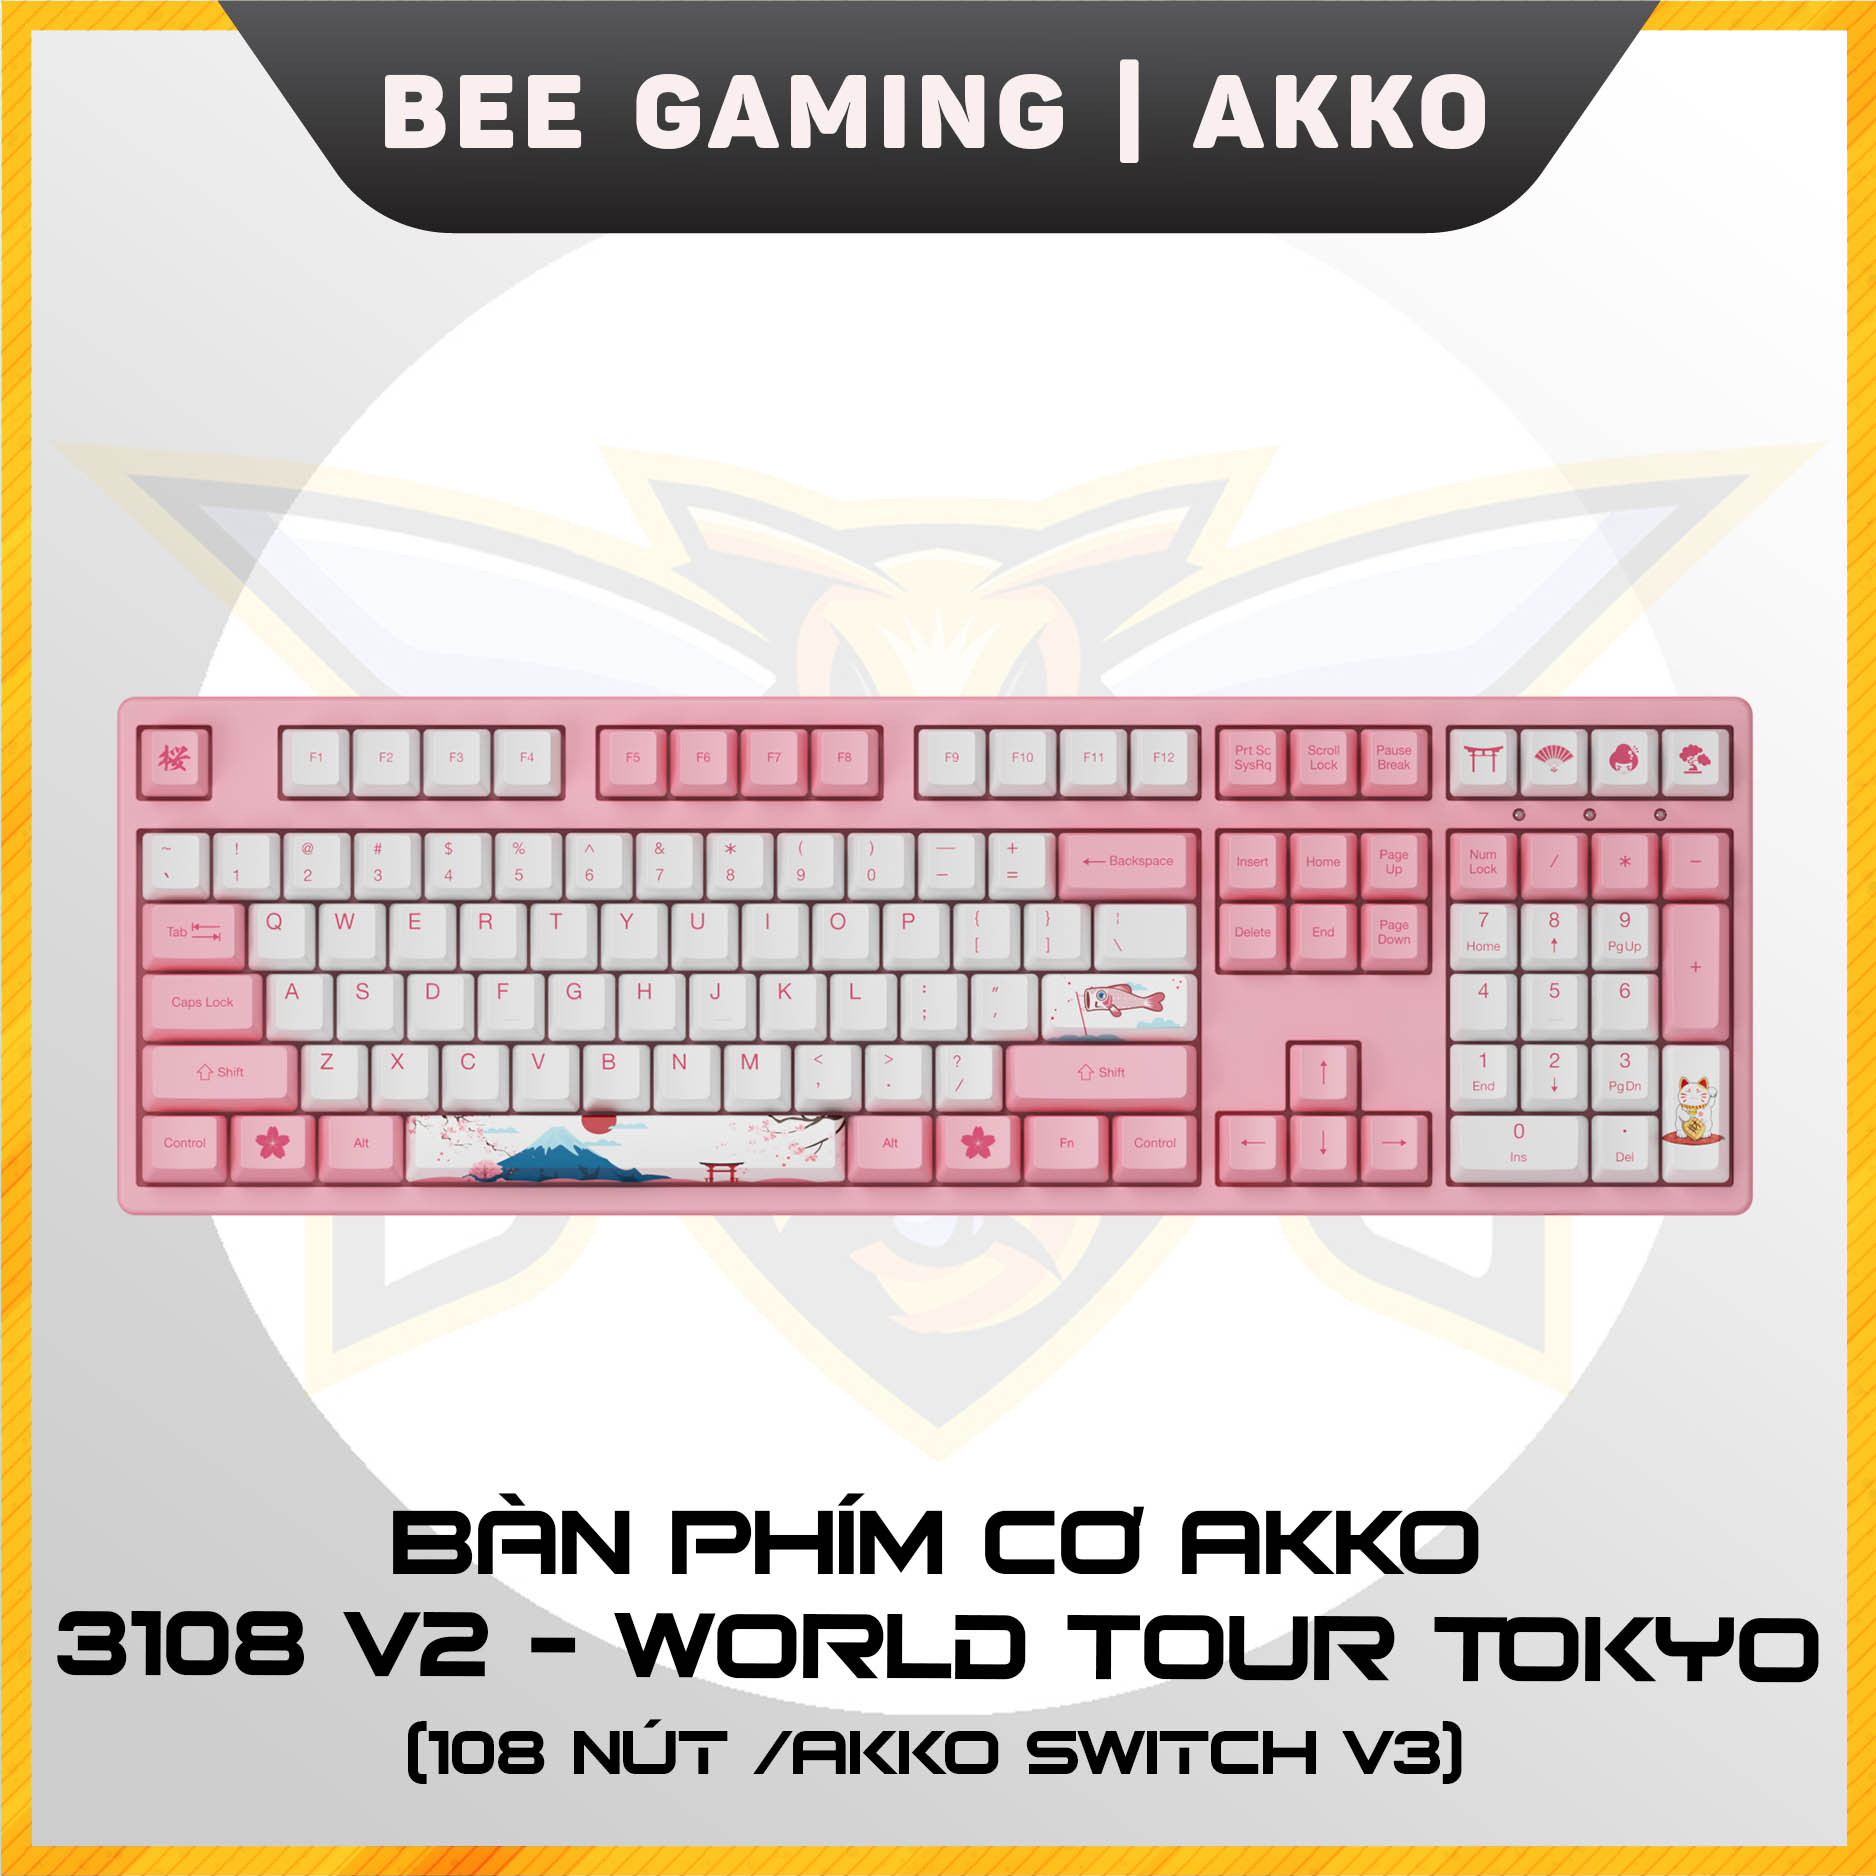 Bàn phím cơ AKKO 3108 World Tour Tokyo (108 nút / AKKO Switch v3) - Hàng chính hãng lỗi 1 đổi 1 trong 12 tháng